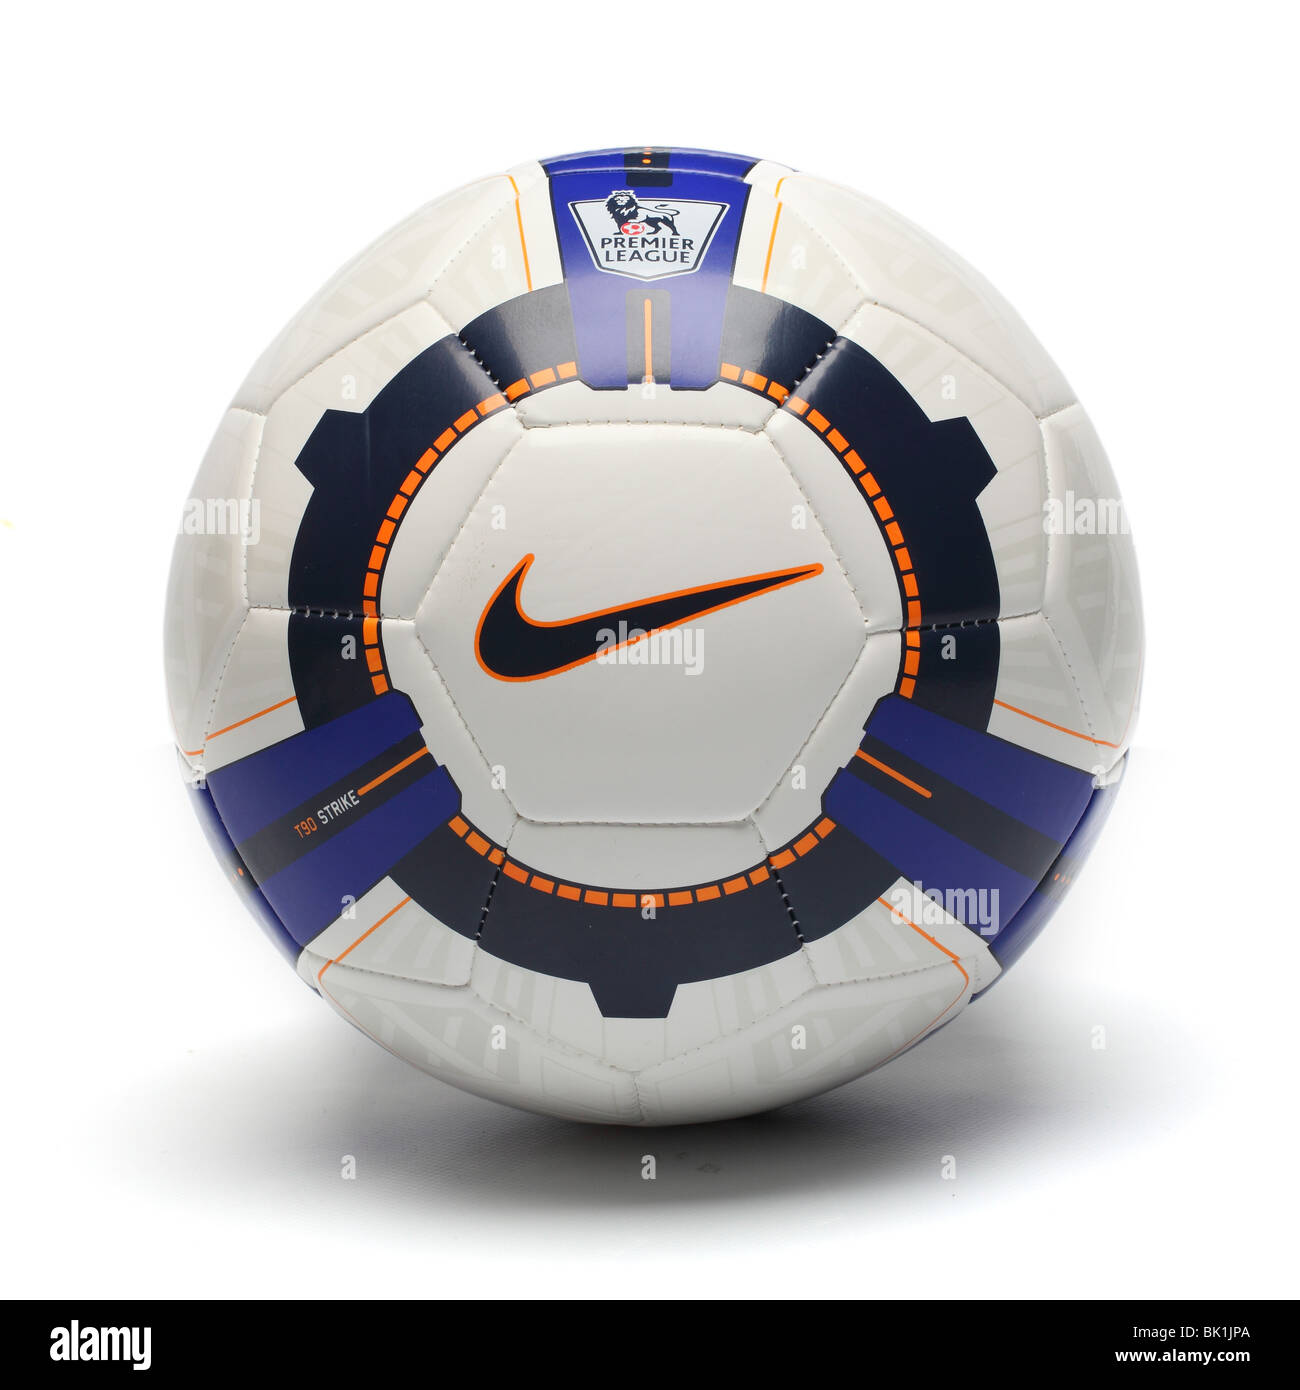 Team Nike piede palla soccer football club sport cerchio globe modello circolare team logo laterale attrezzatura tribù lifestyle troph play Foto Stock